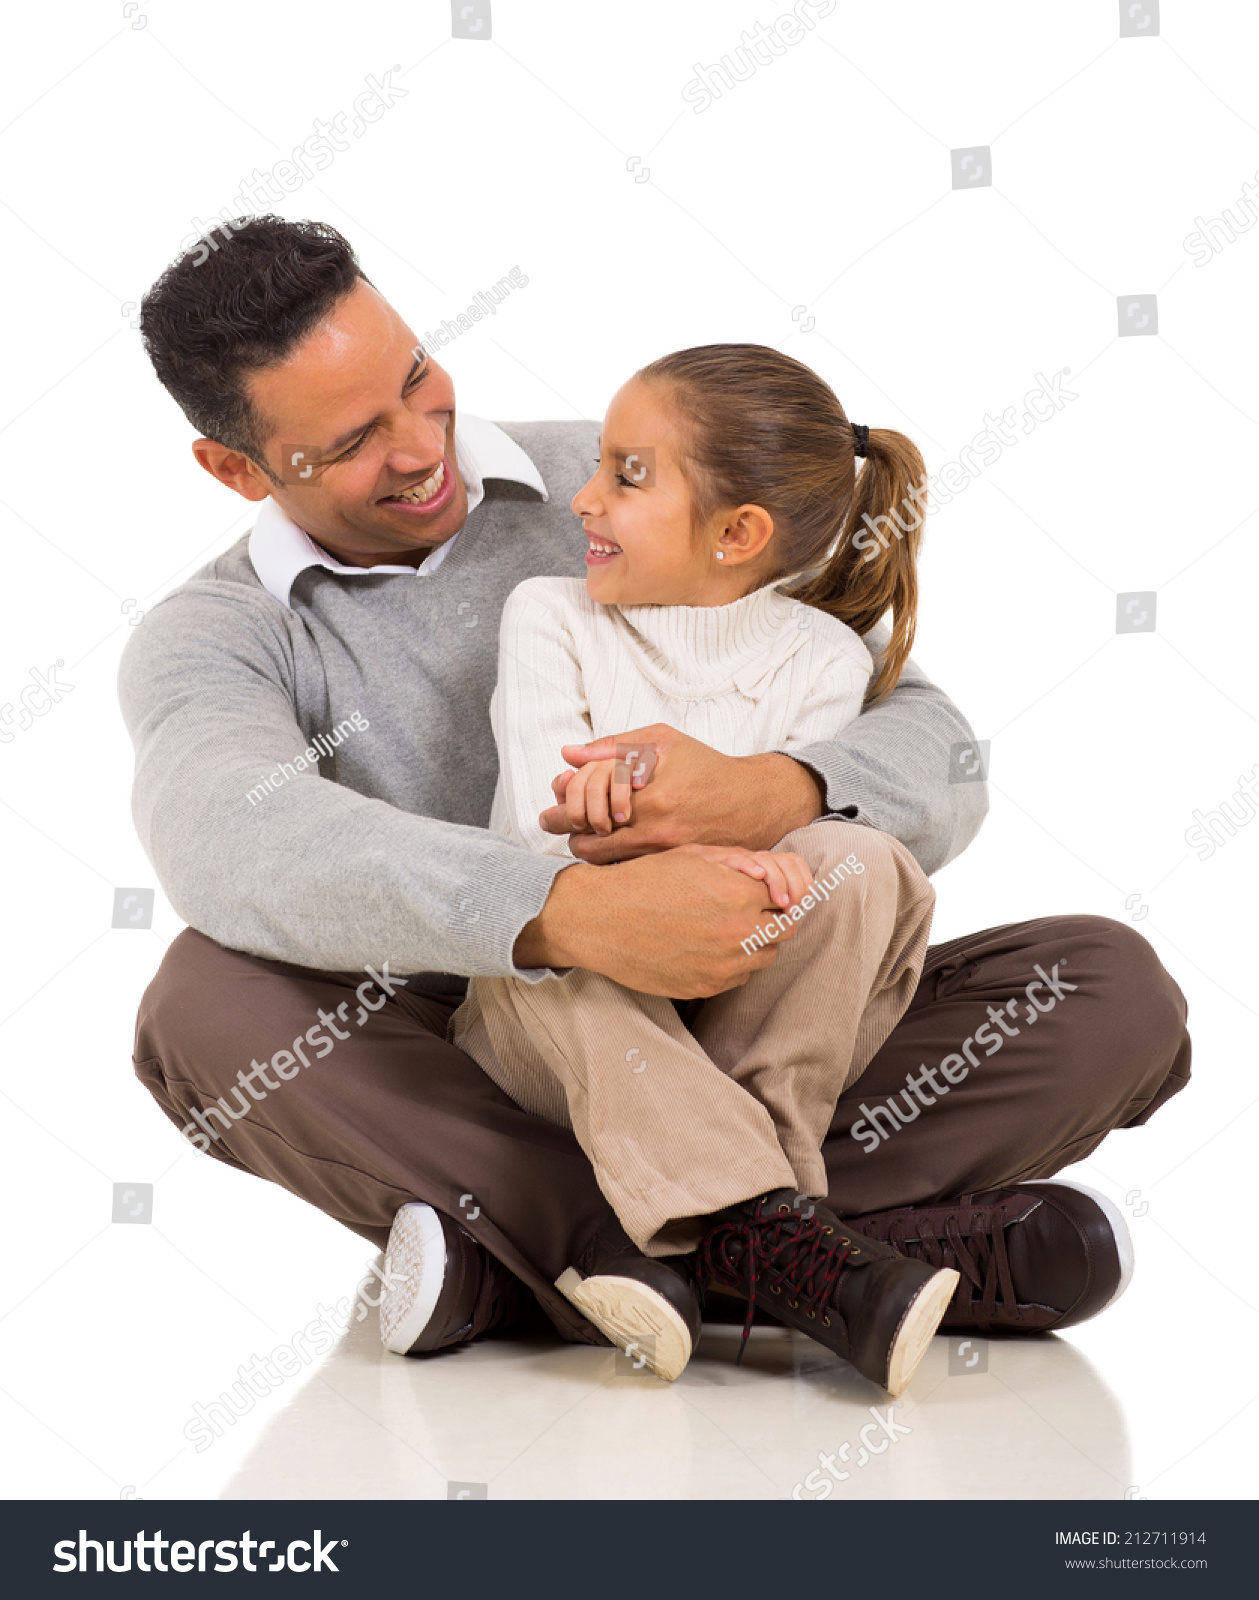 Father sit. На коленях у папы. Девочка на коленях у отца. Дочка на коленях у папы. Дочь сидит на коленях отца.